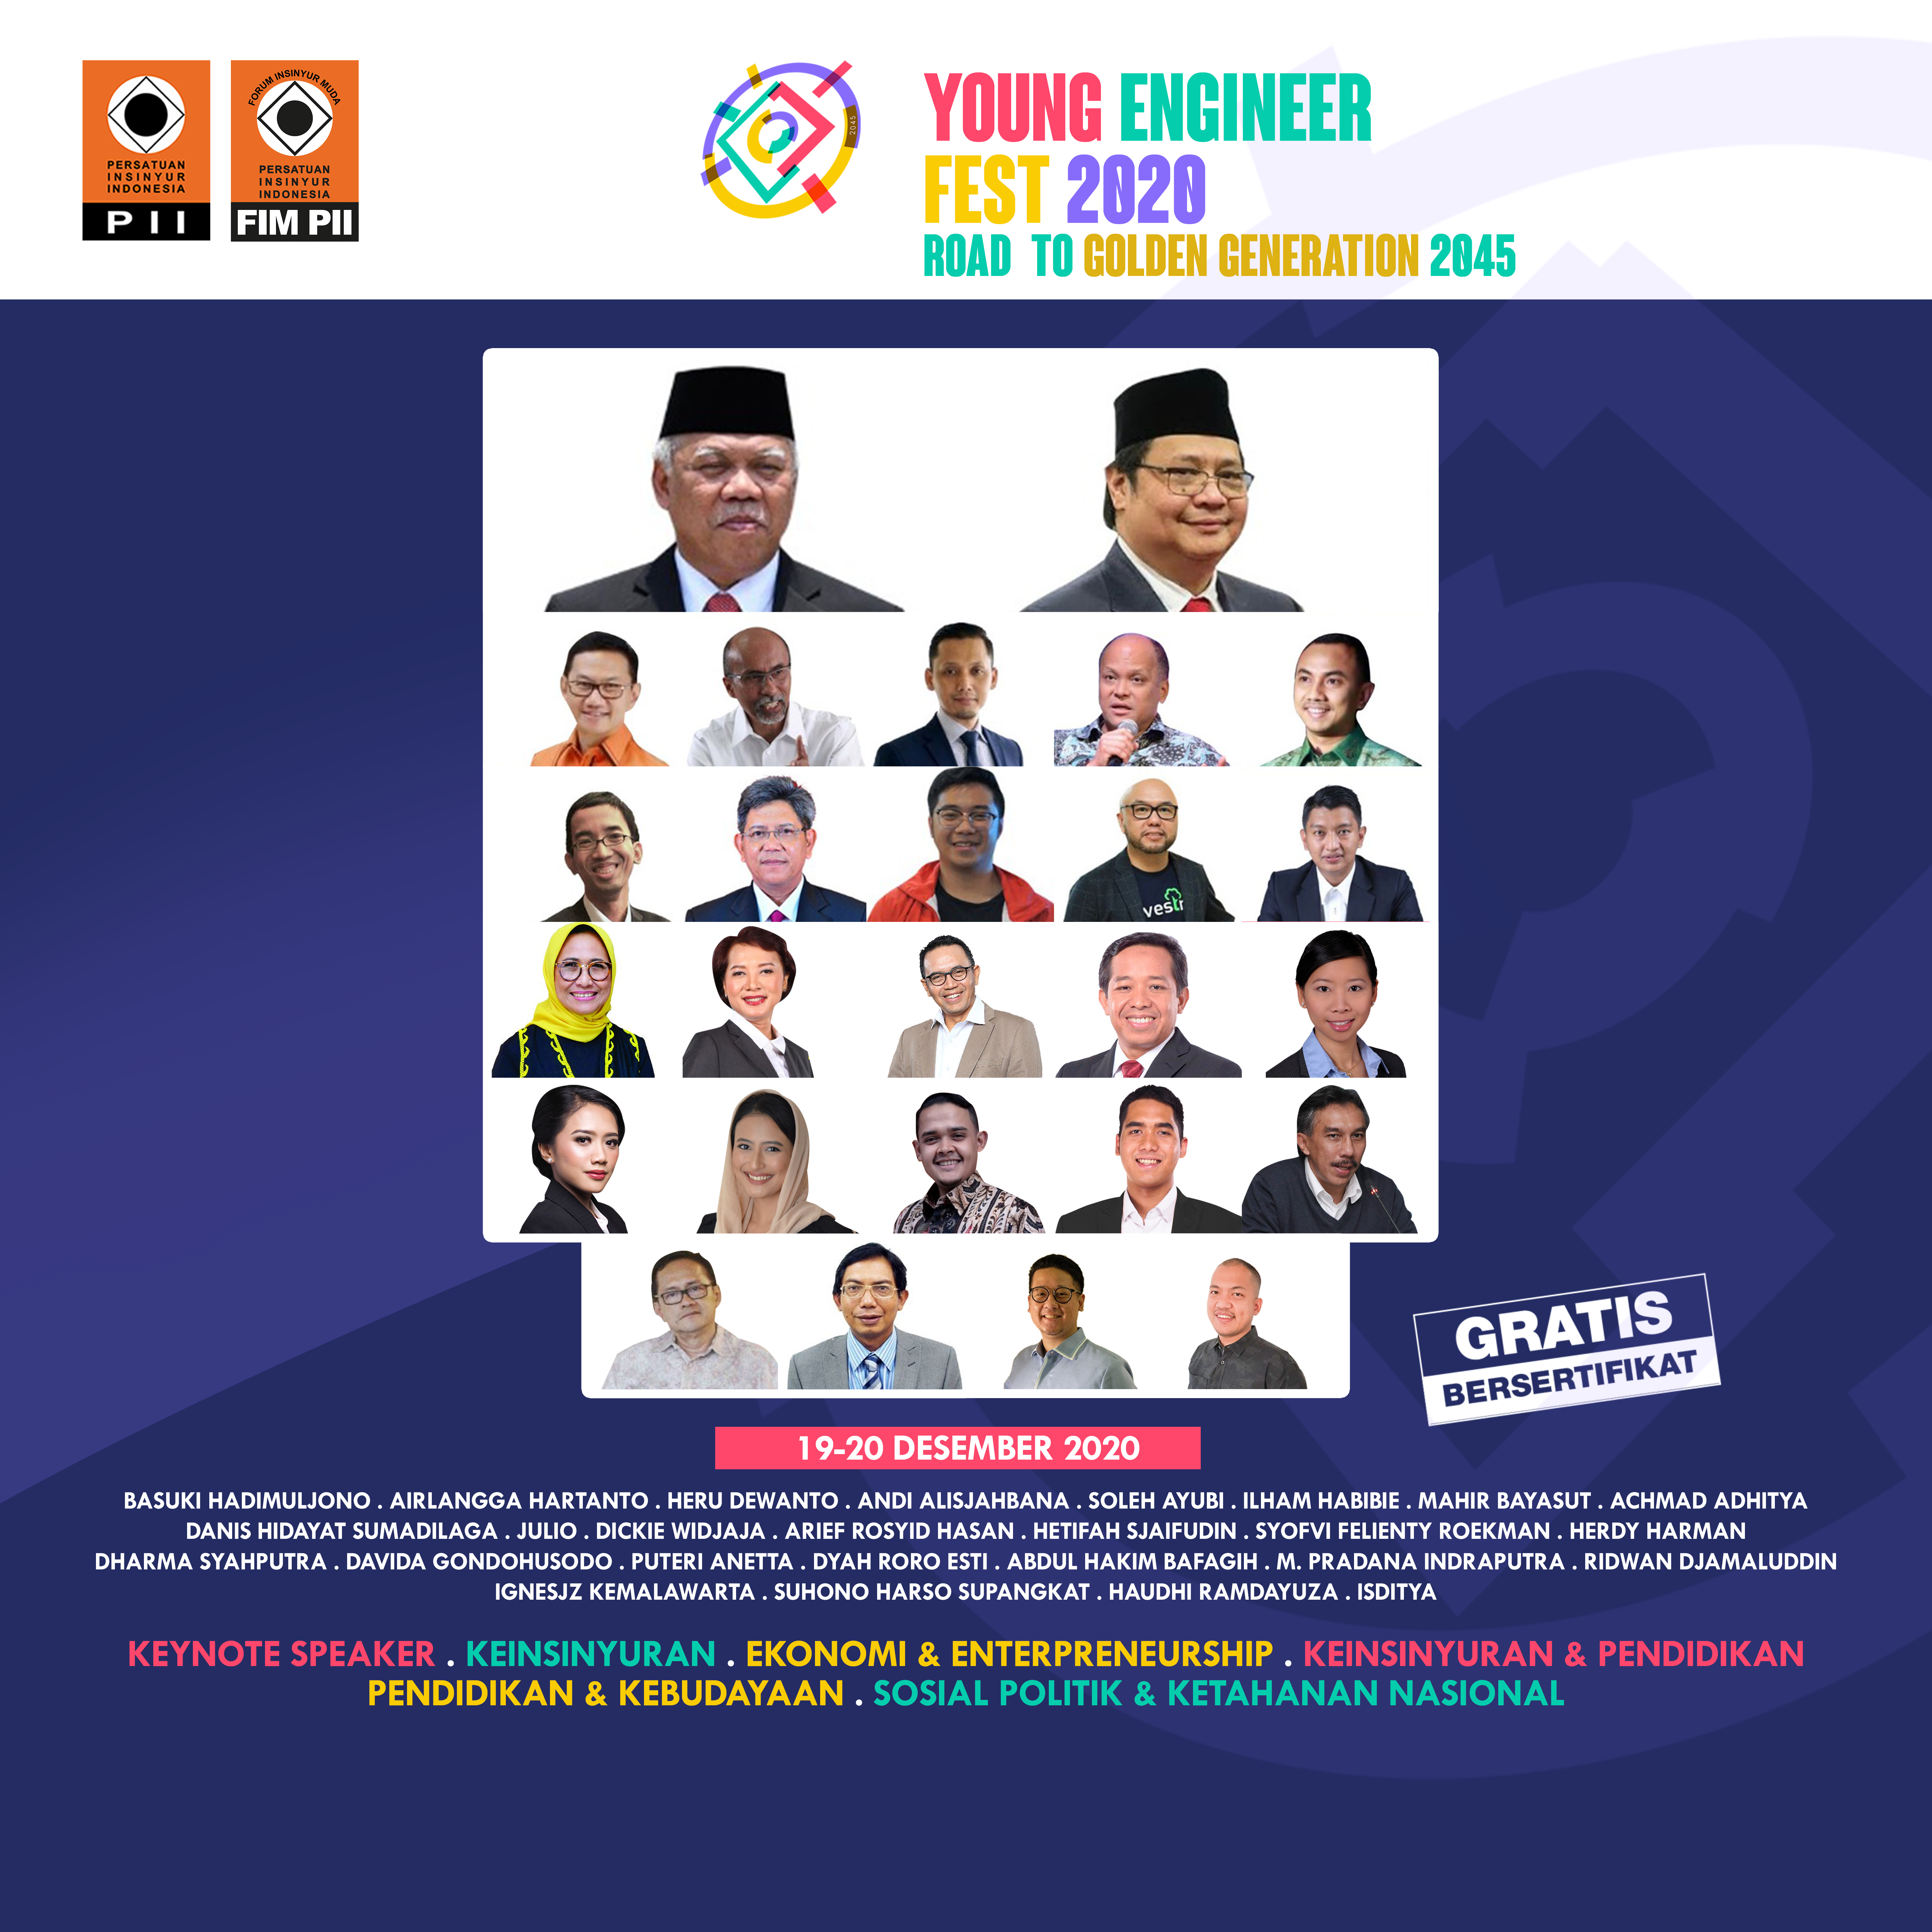 Tampung Aspirasi & Inovasi Insinyur Muda, FIM-PII Gelar Young Engineer Festival 2020